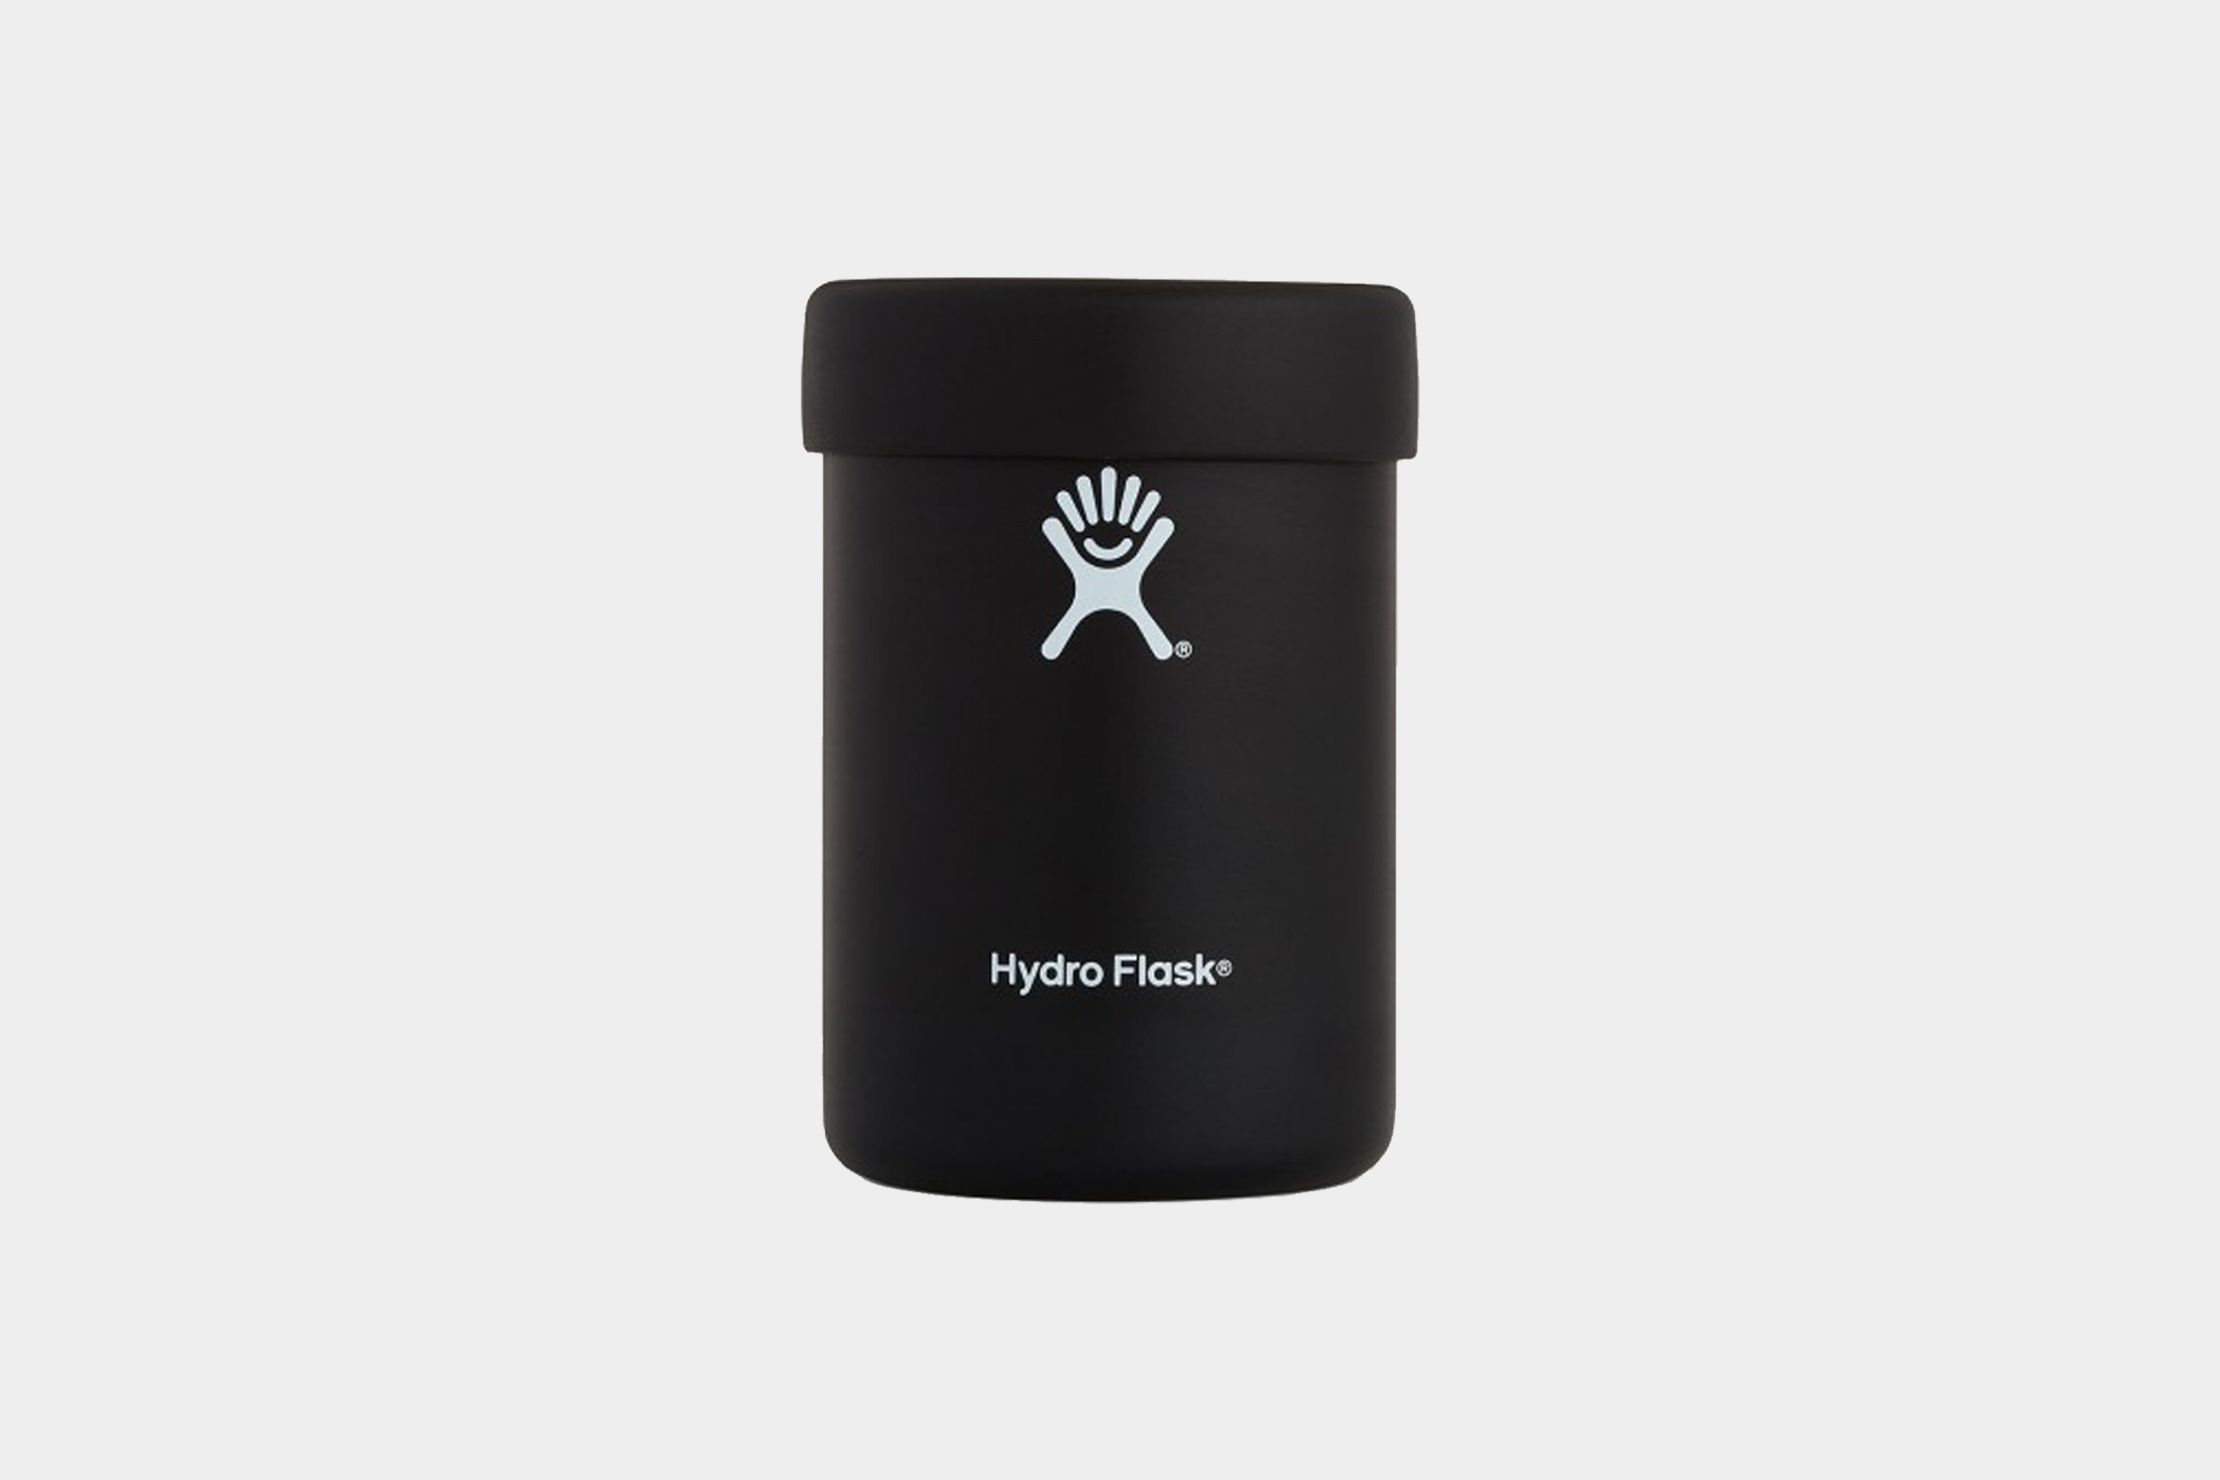 https://cdn.packhacker.com/2019/10/ec8e9f67-hydro-flask-12-oz-cooler-cup.jpg